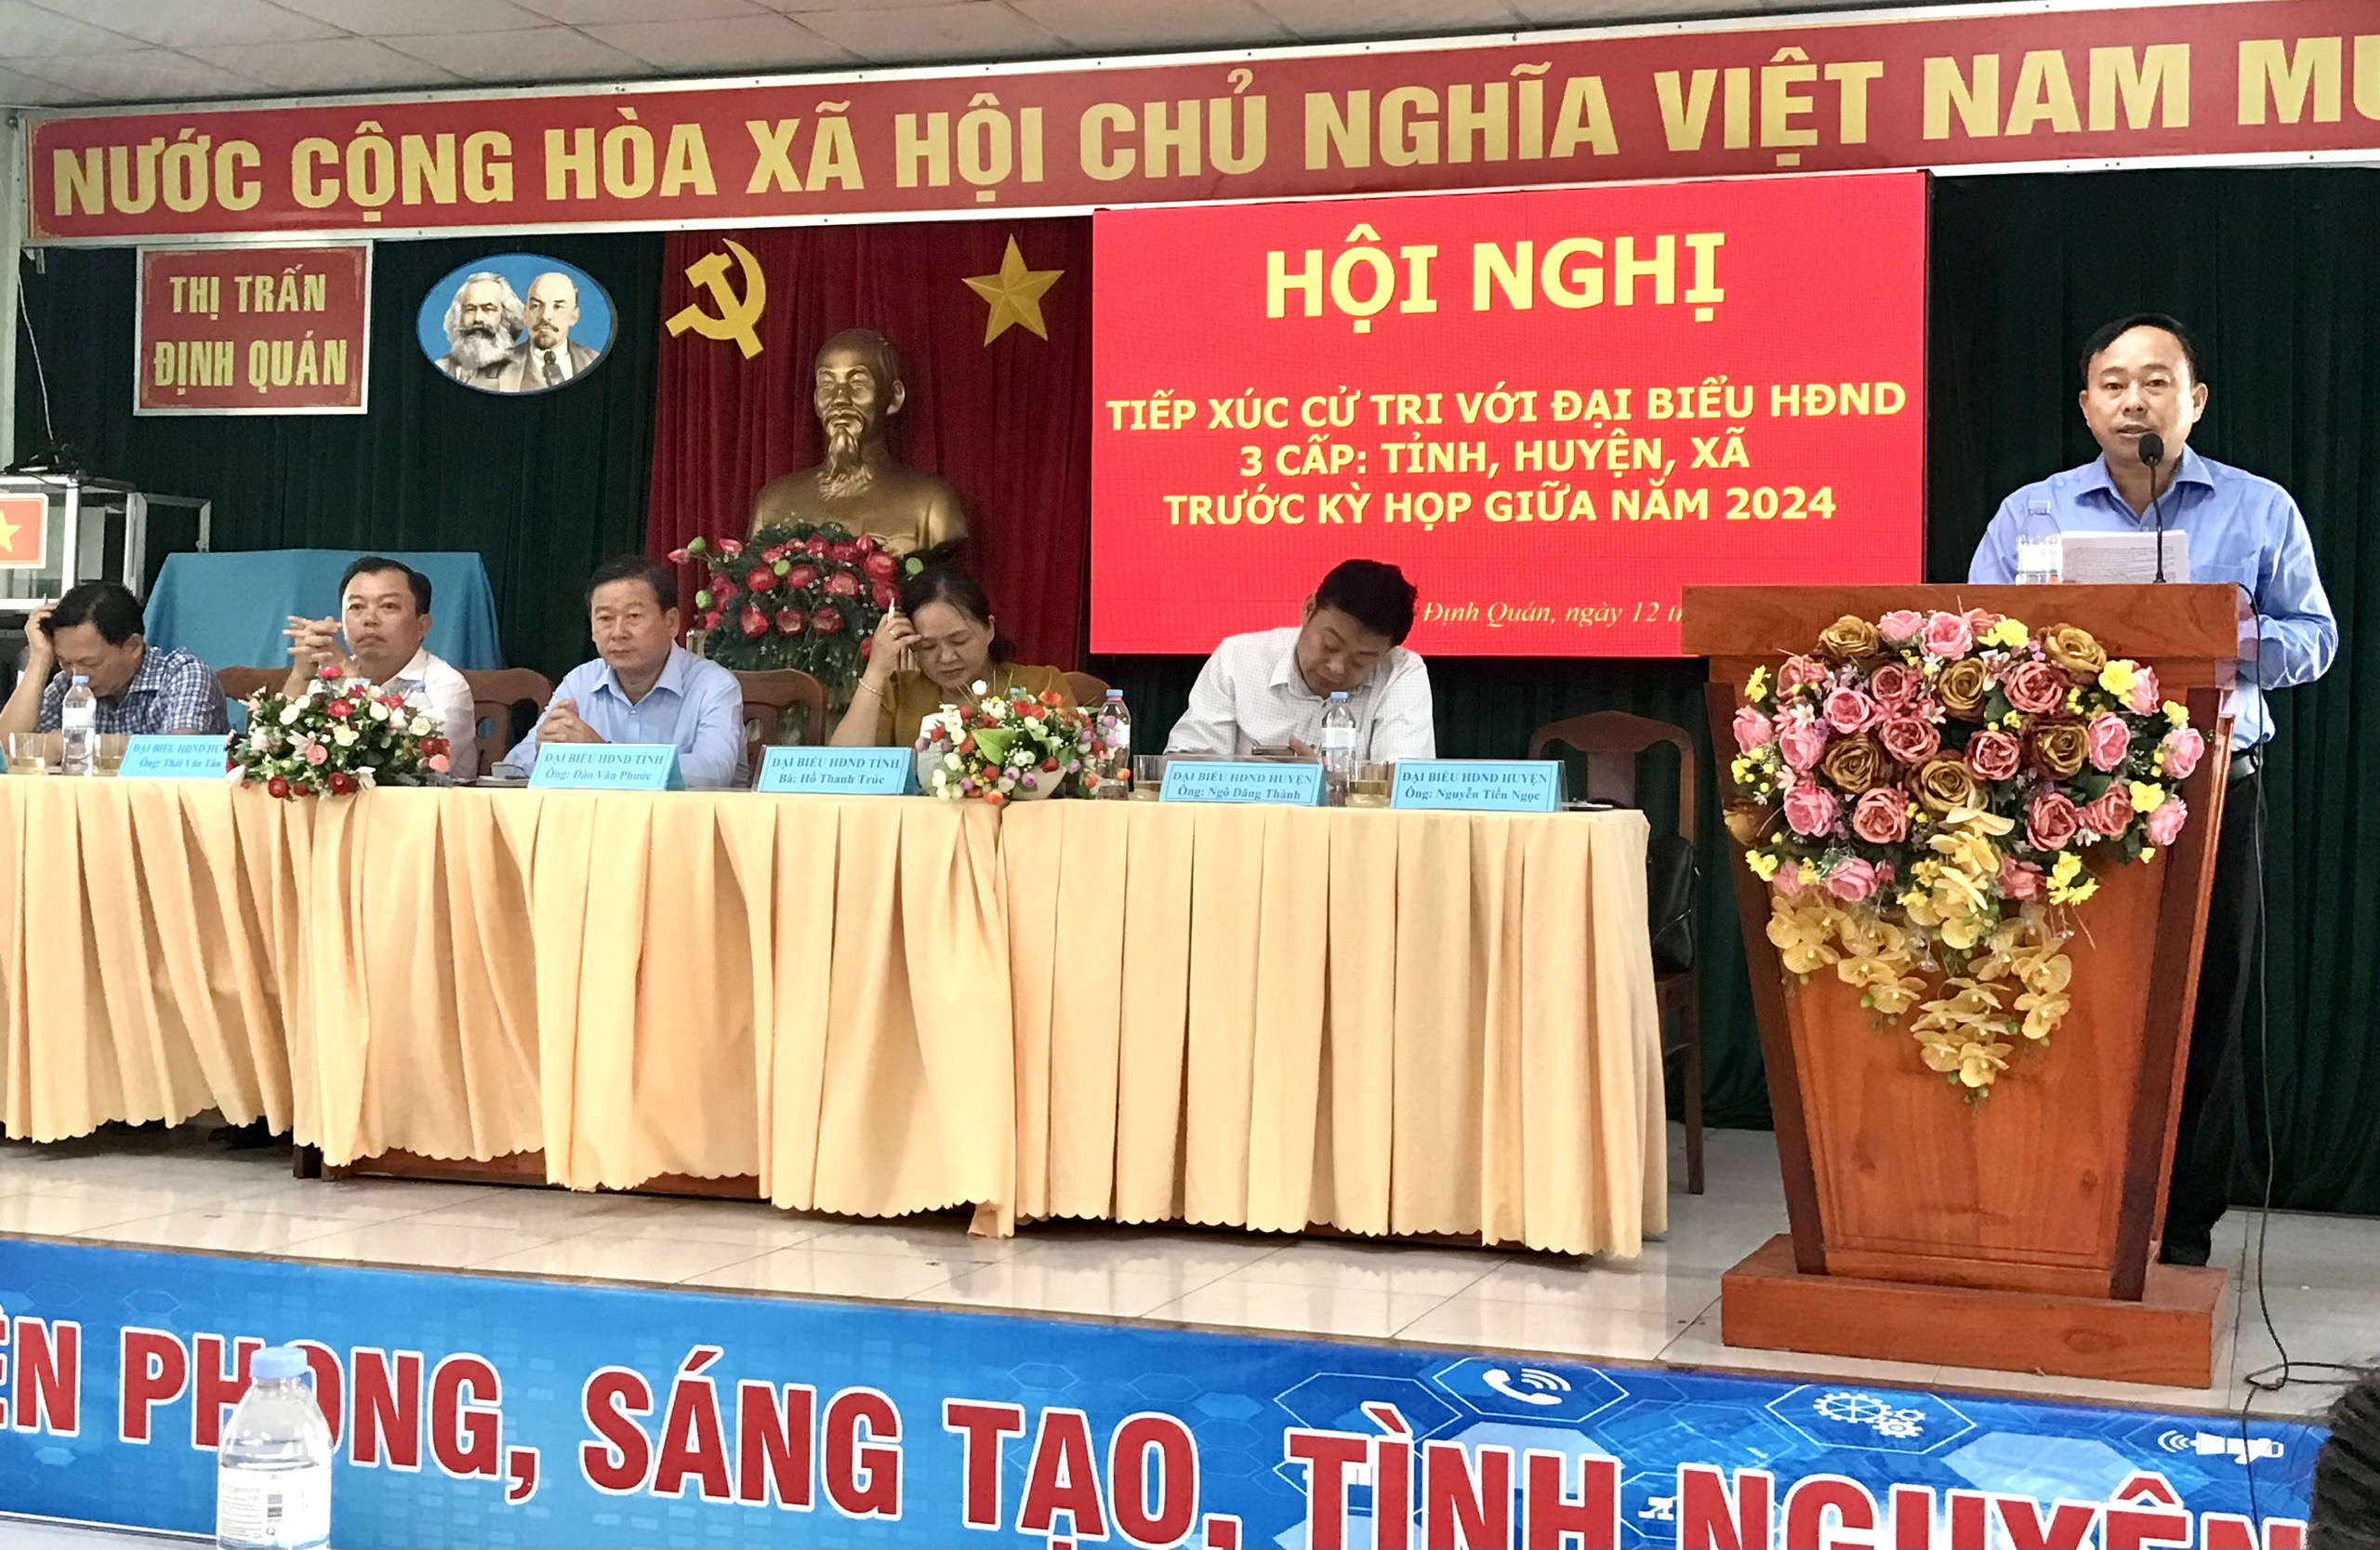 Hình 1 - Đồng chí Nguyễn Tiến Ngọc báo cáo tình hình KTXH, ANQP 6 tháng đầu năm của huyện tại Hội nghị.jpg